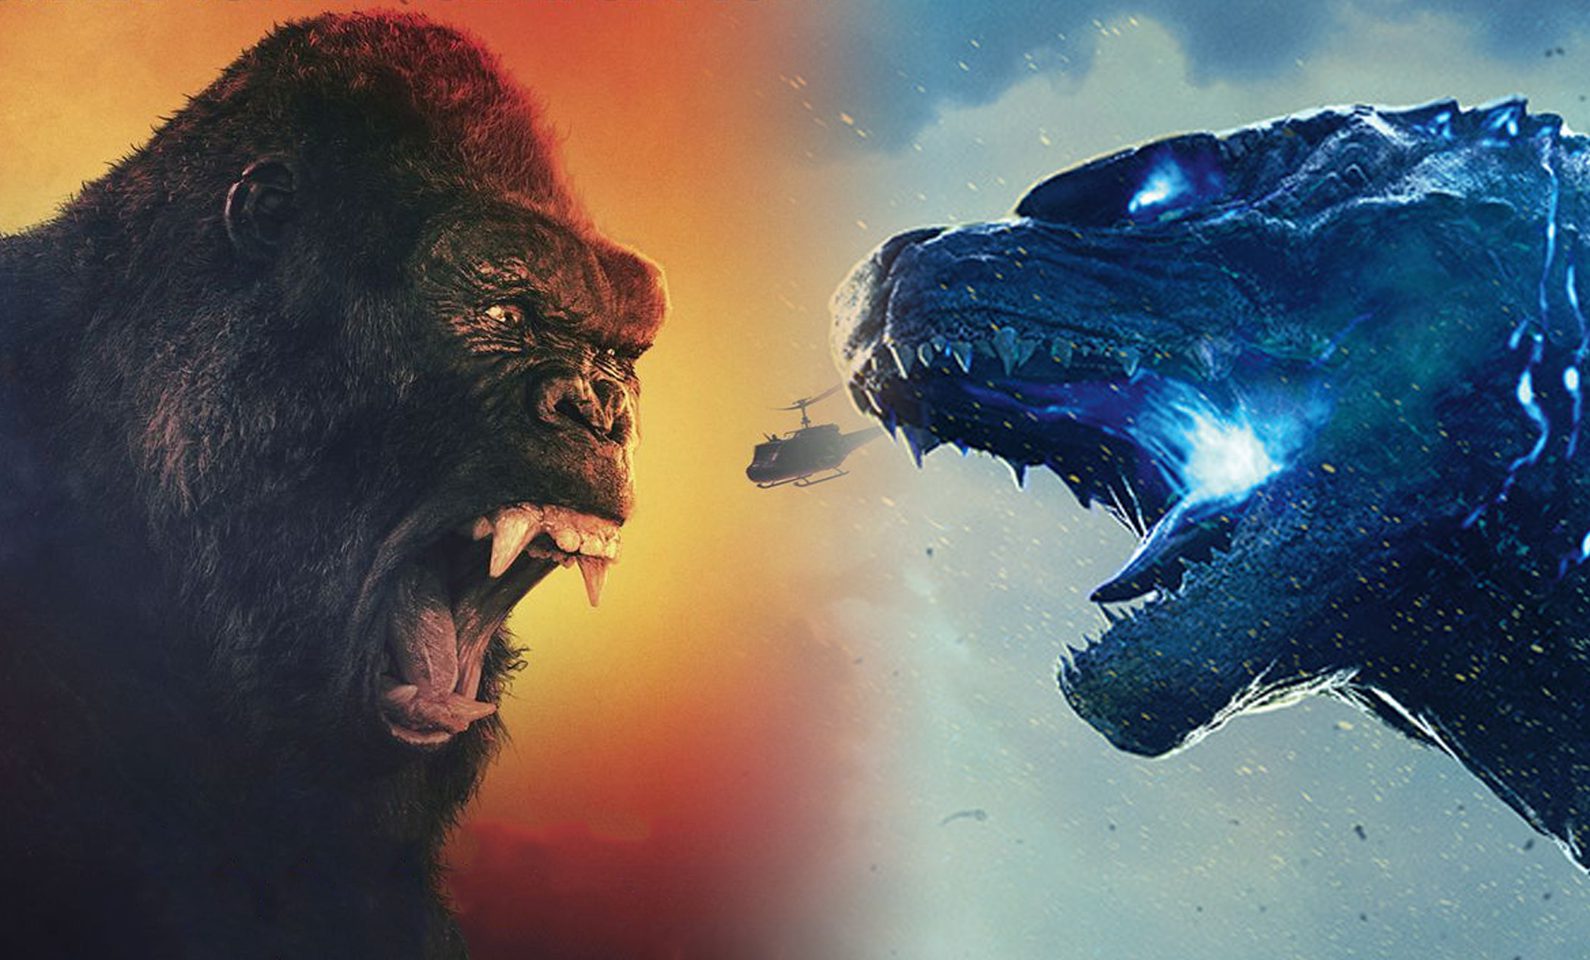 Kong Vs. Godzilla